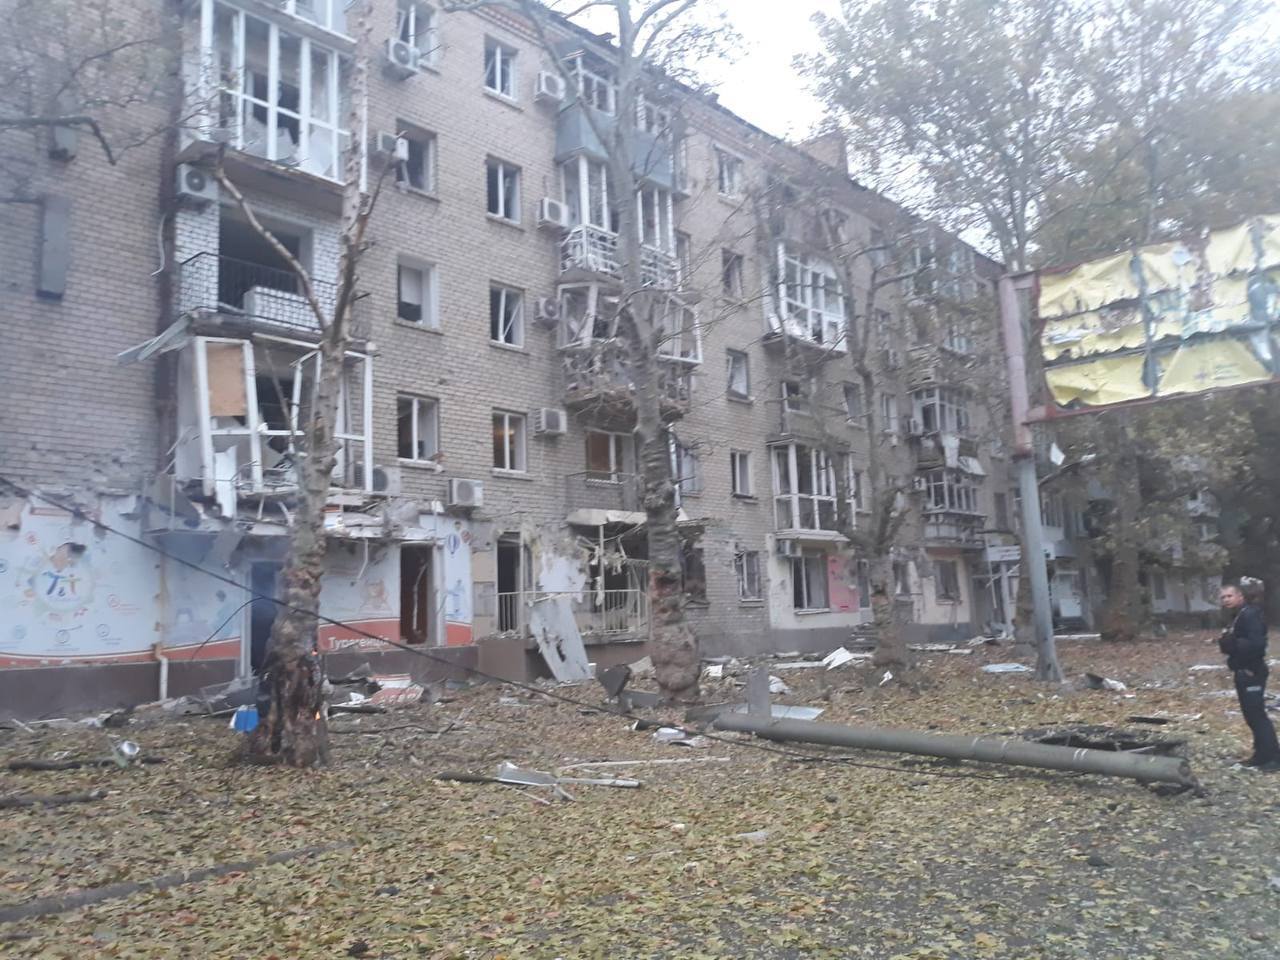 Zdjęcia i wideo po ostrzale budynków w centrum Charkowa